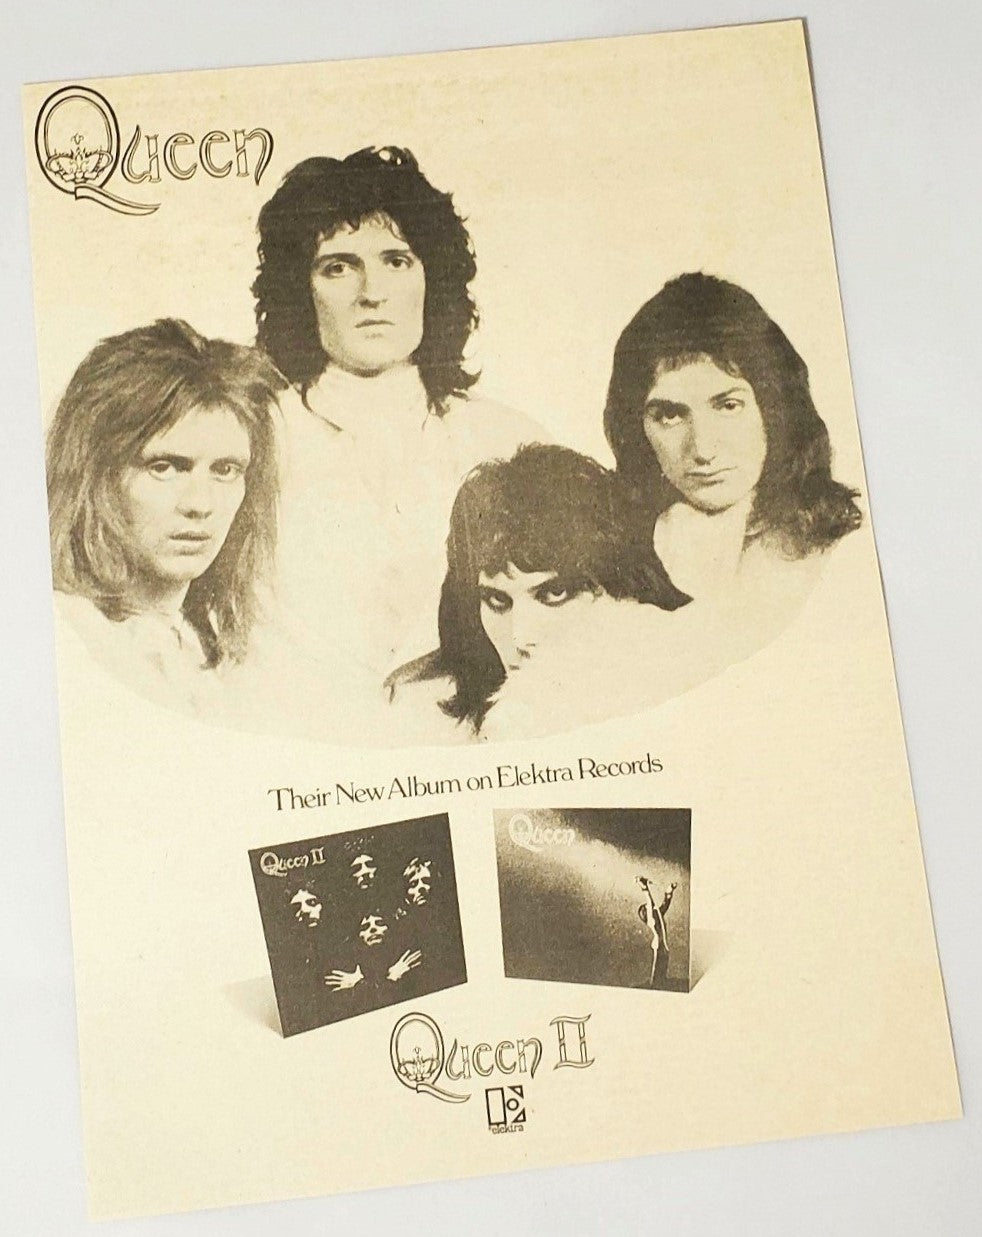 Vintage original June 1974 Queen II album release advertisement featured in Rolling Stone magazine